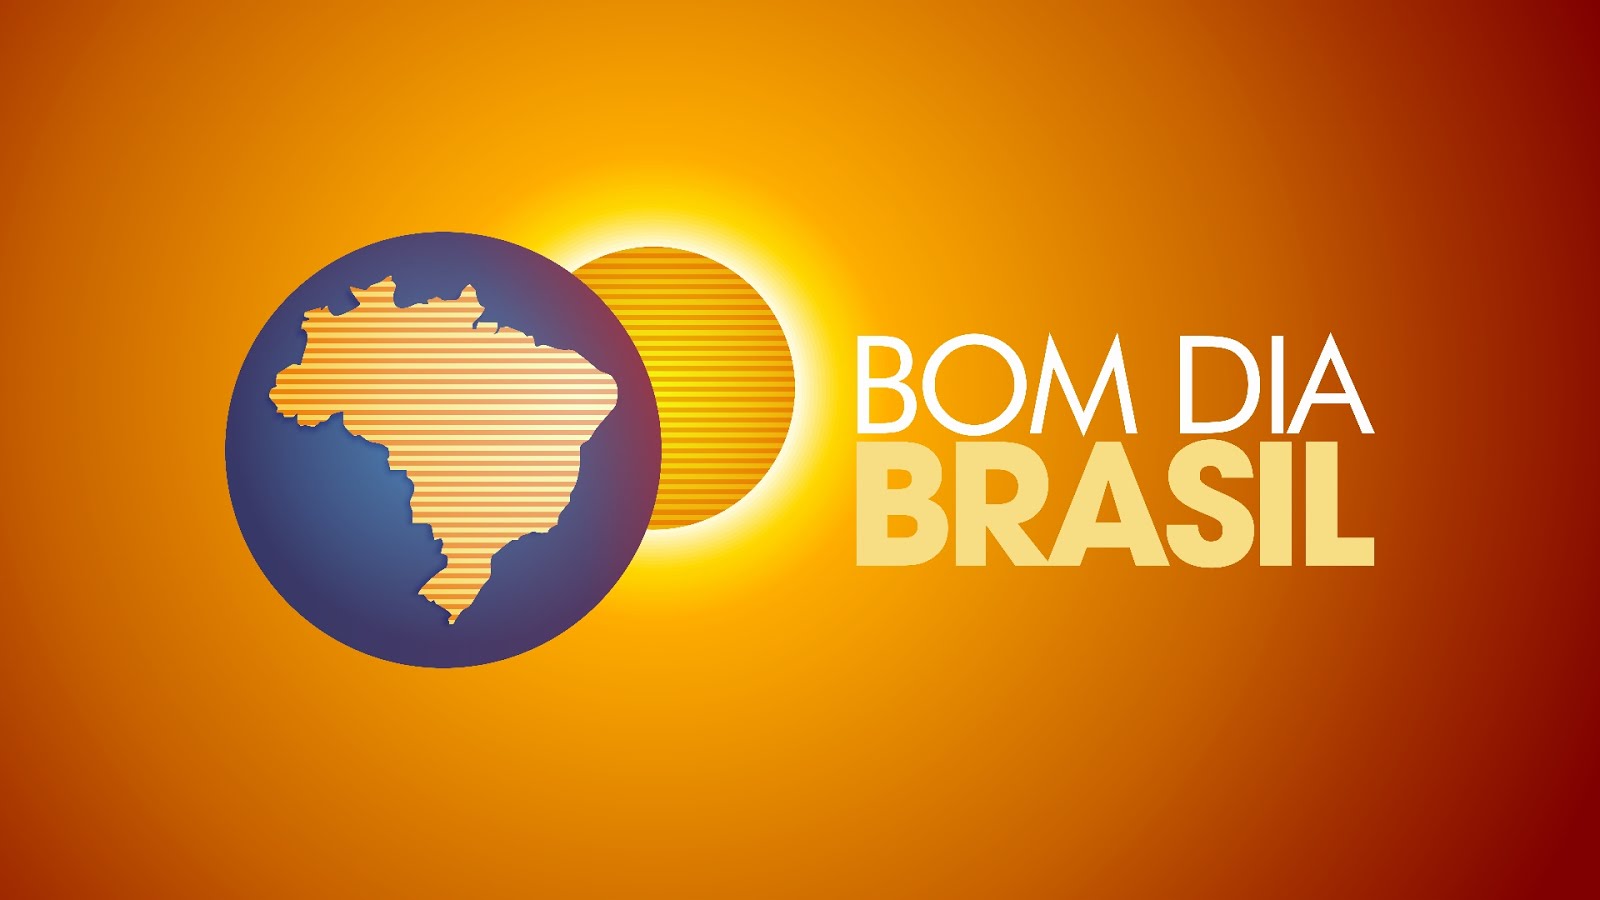 Novo logotipo do Bom Dia Brasil - Rede Globo